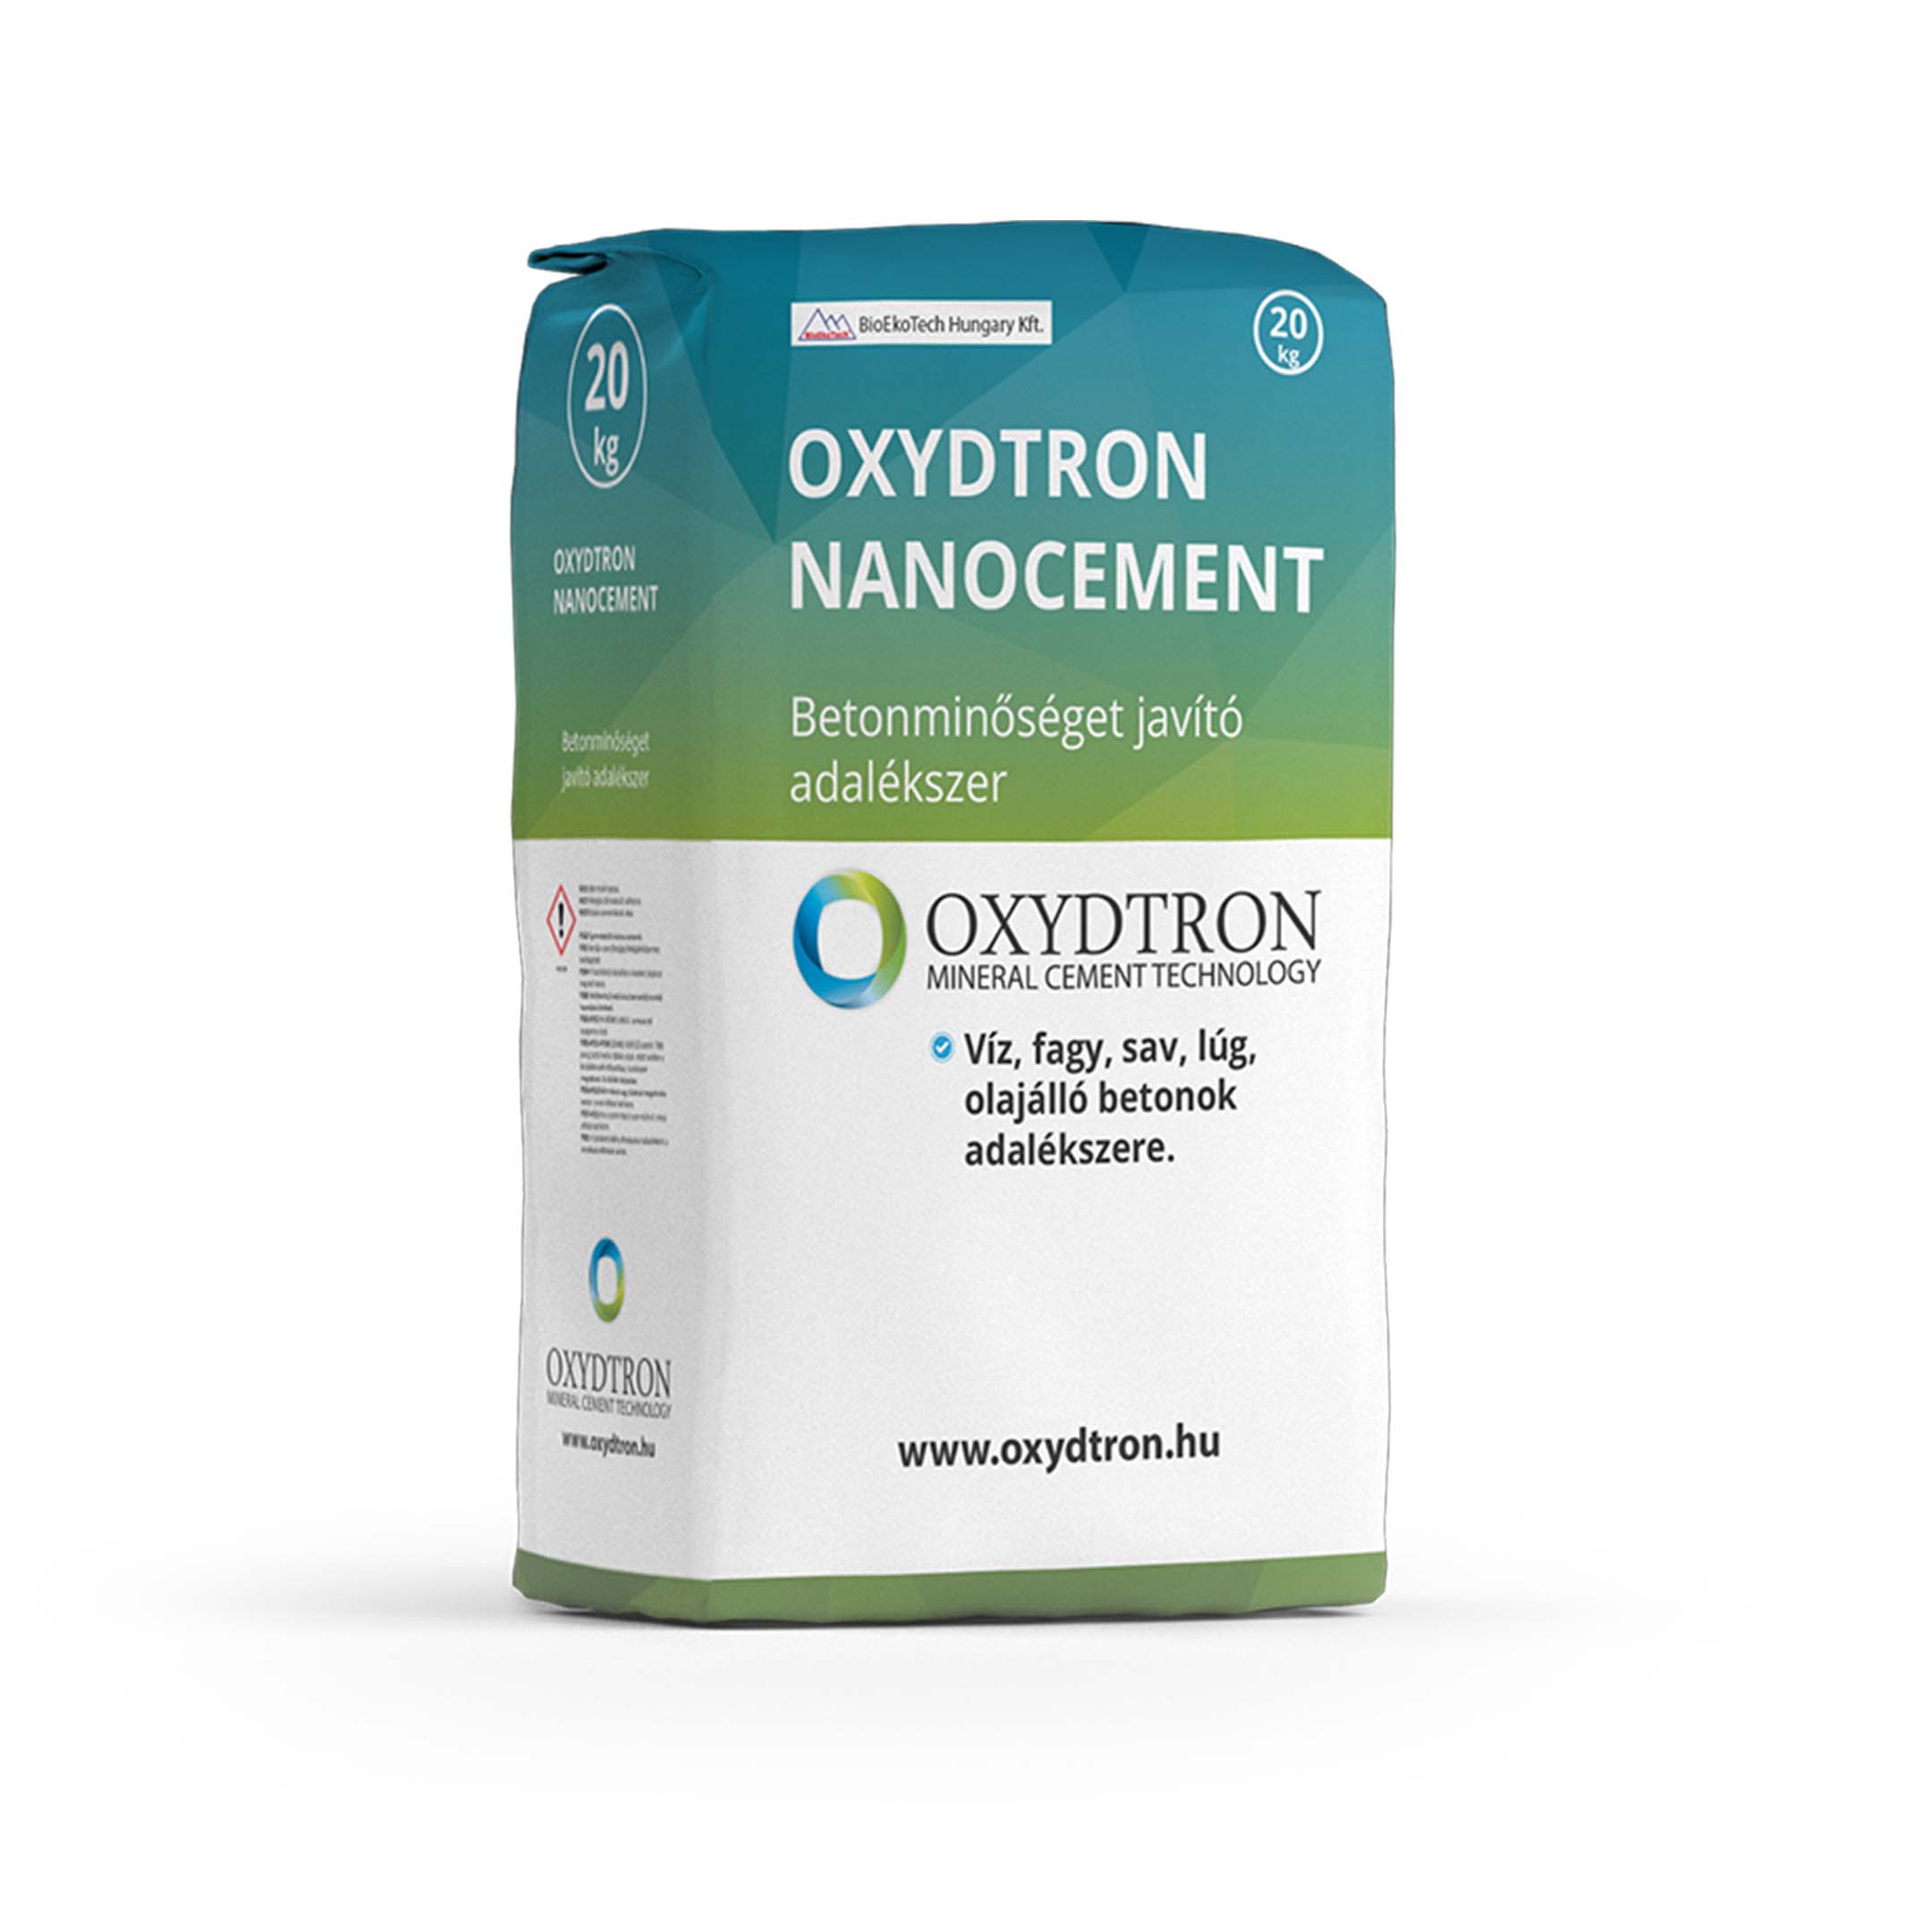 Oxydtron Nanocement Vízzáró betonadalékszer.